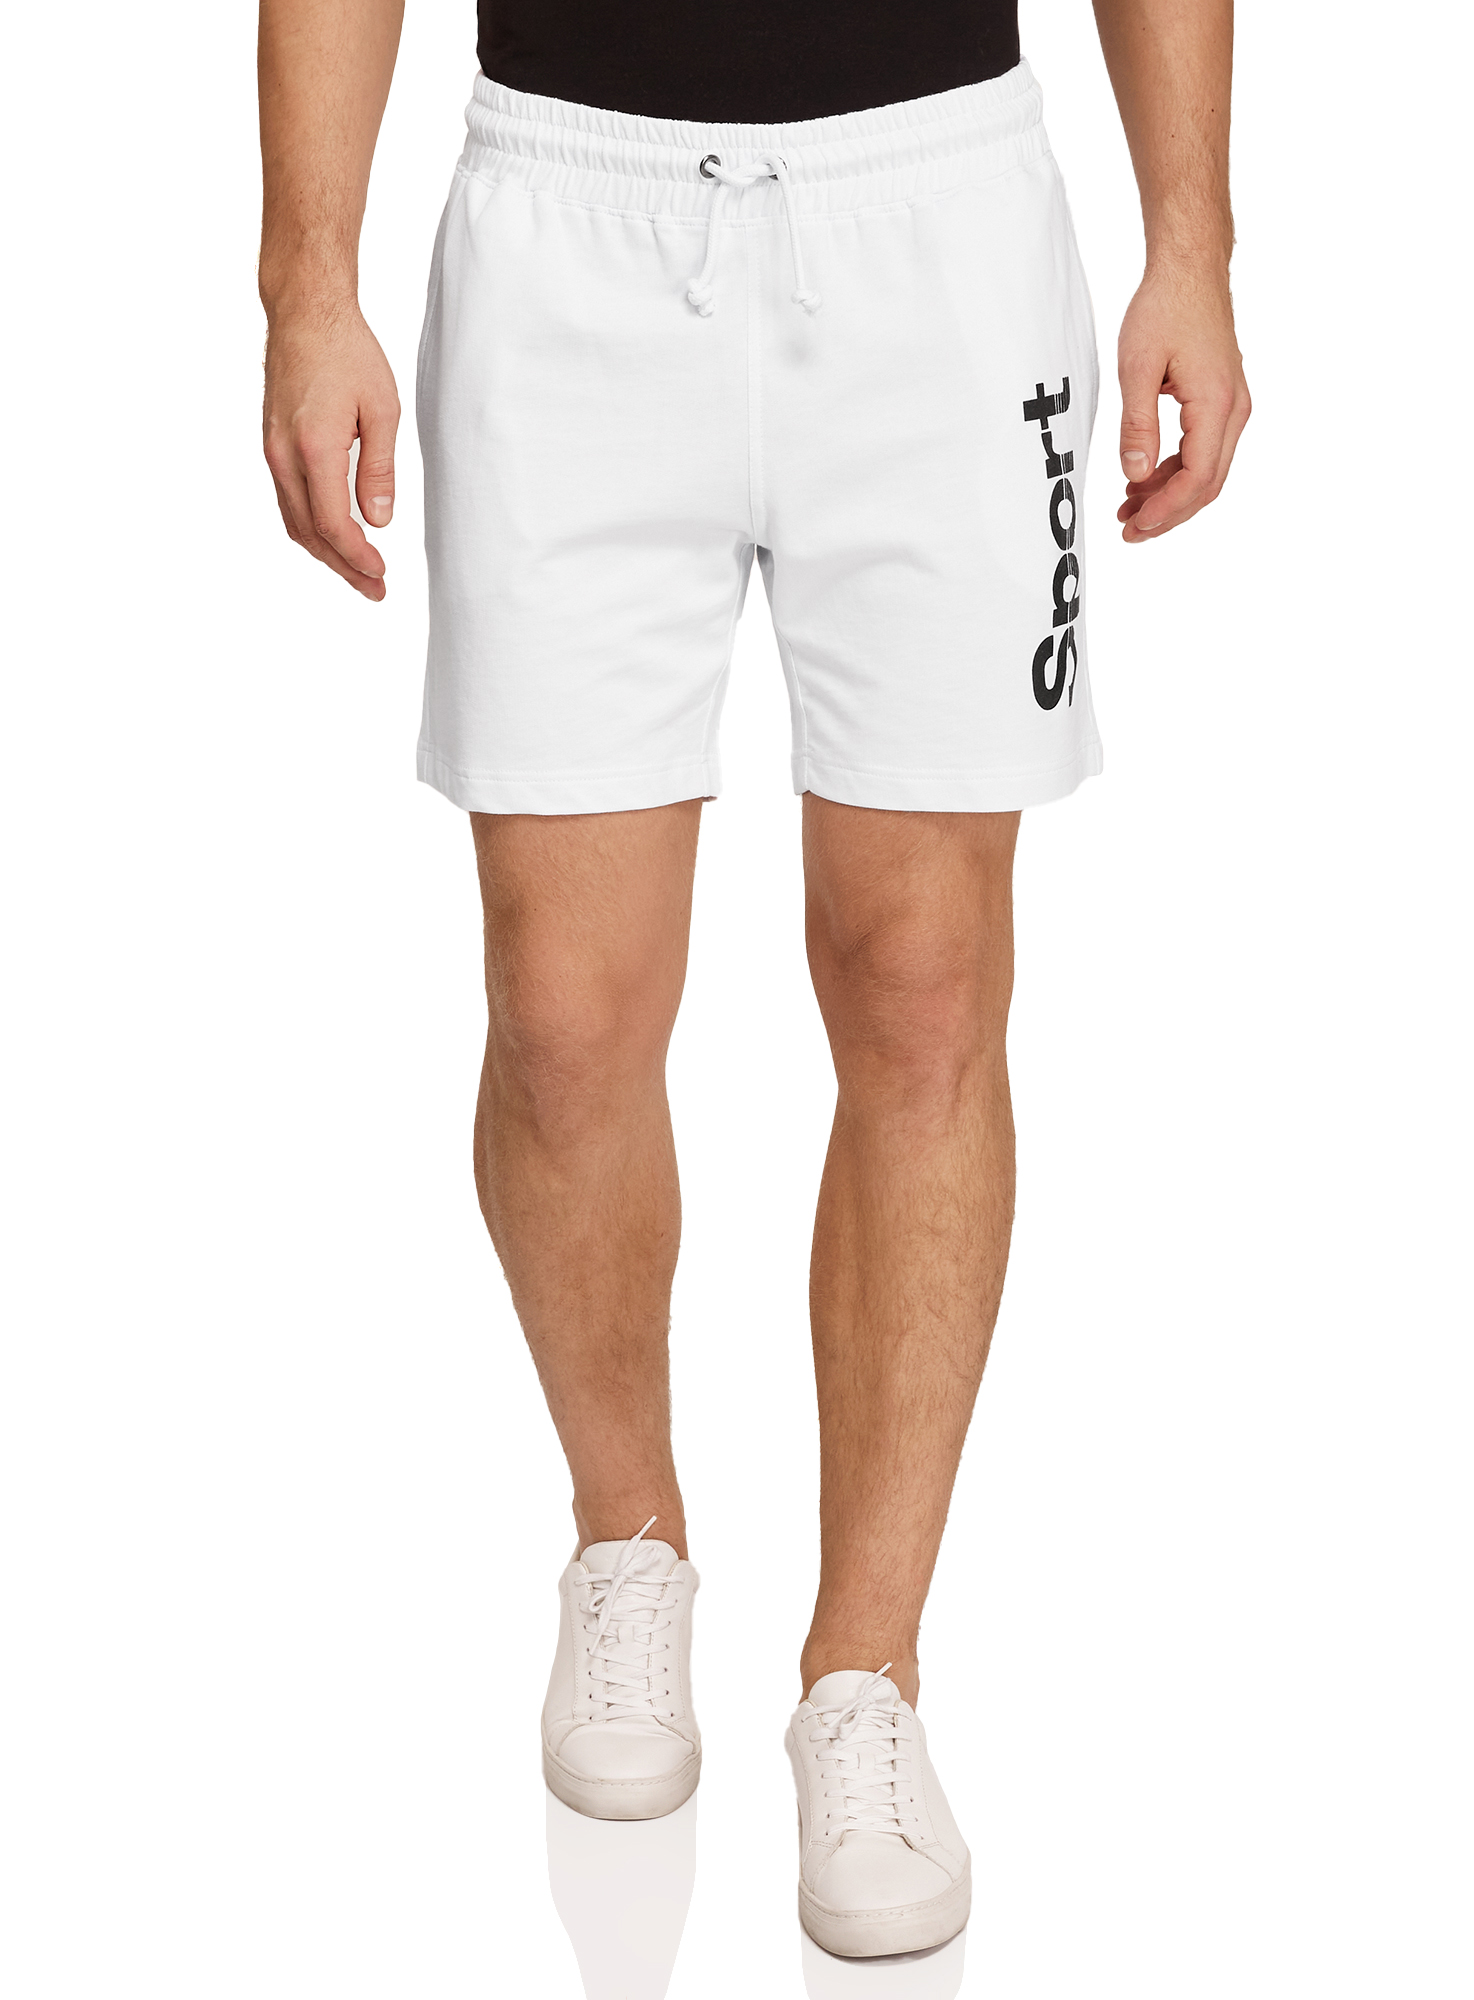 Повседневные шорты мужские oodji 5L270016I-1 белые XL